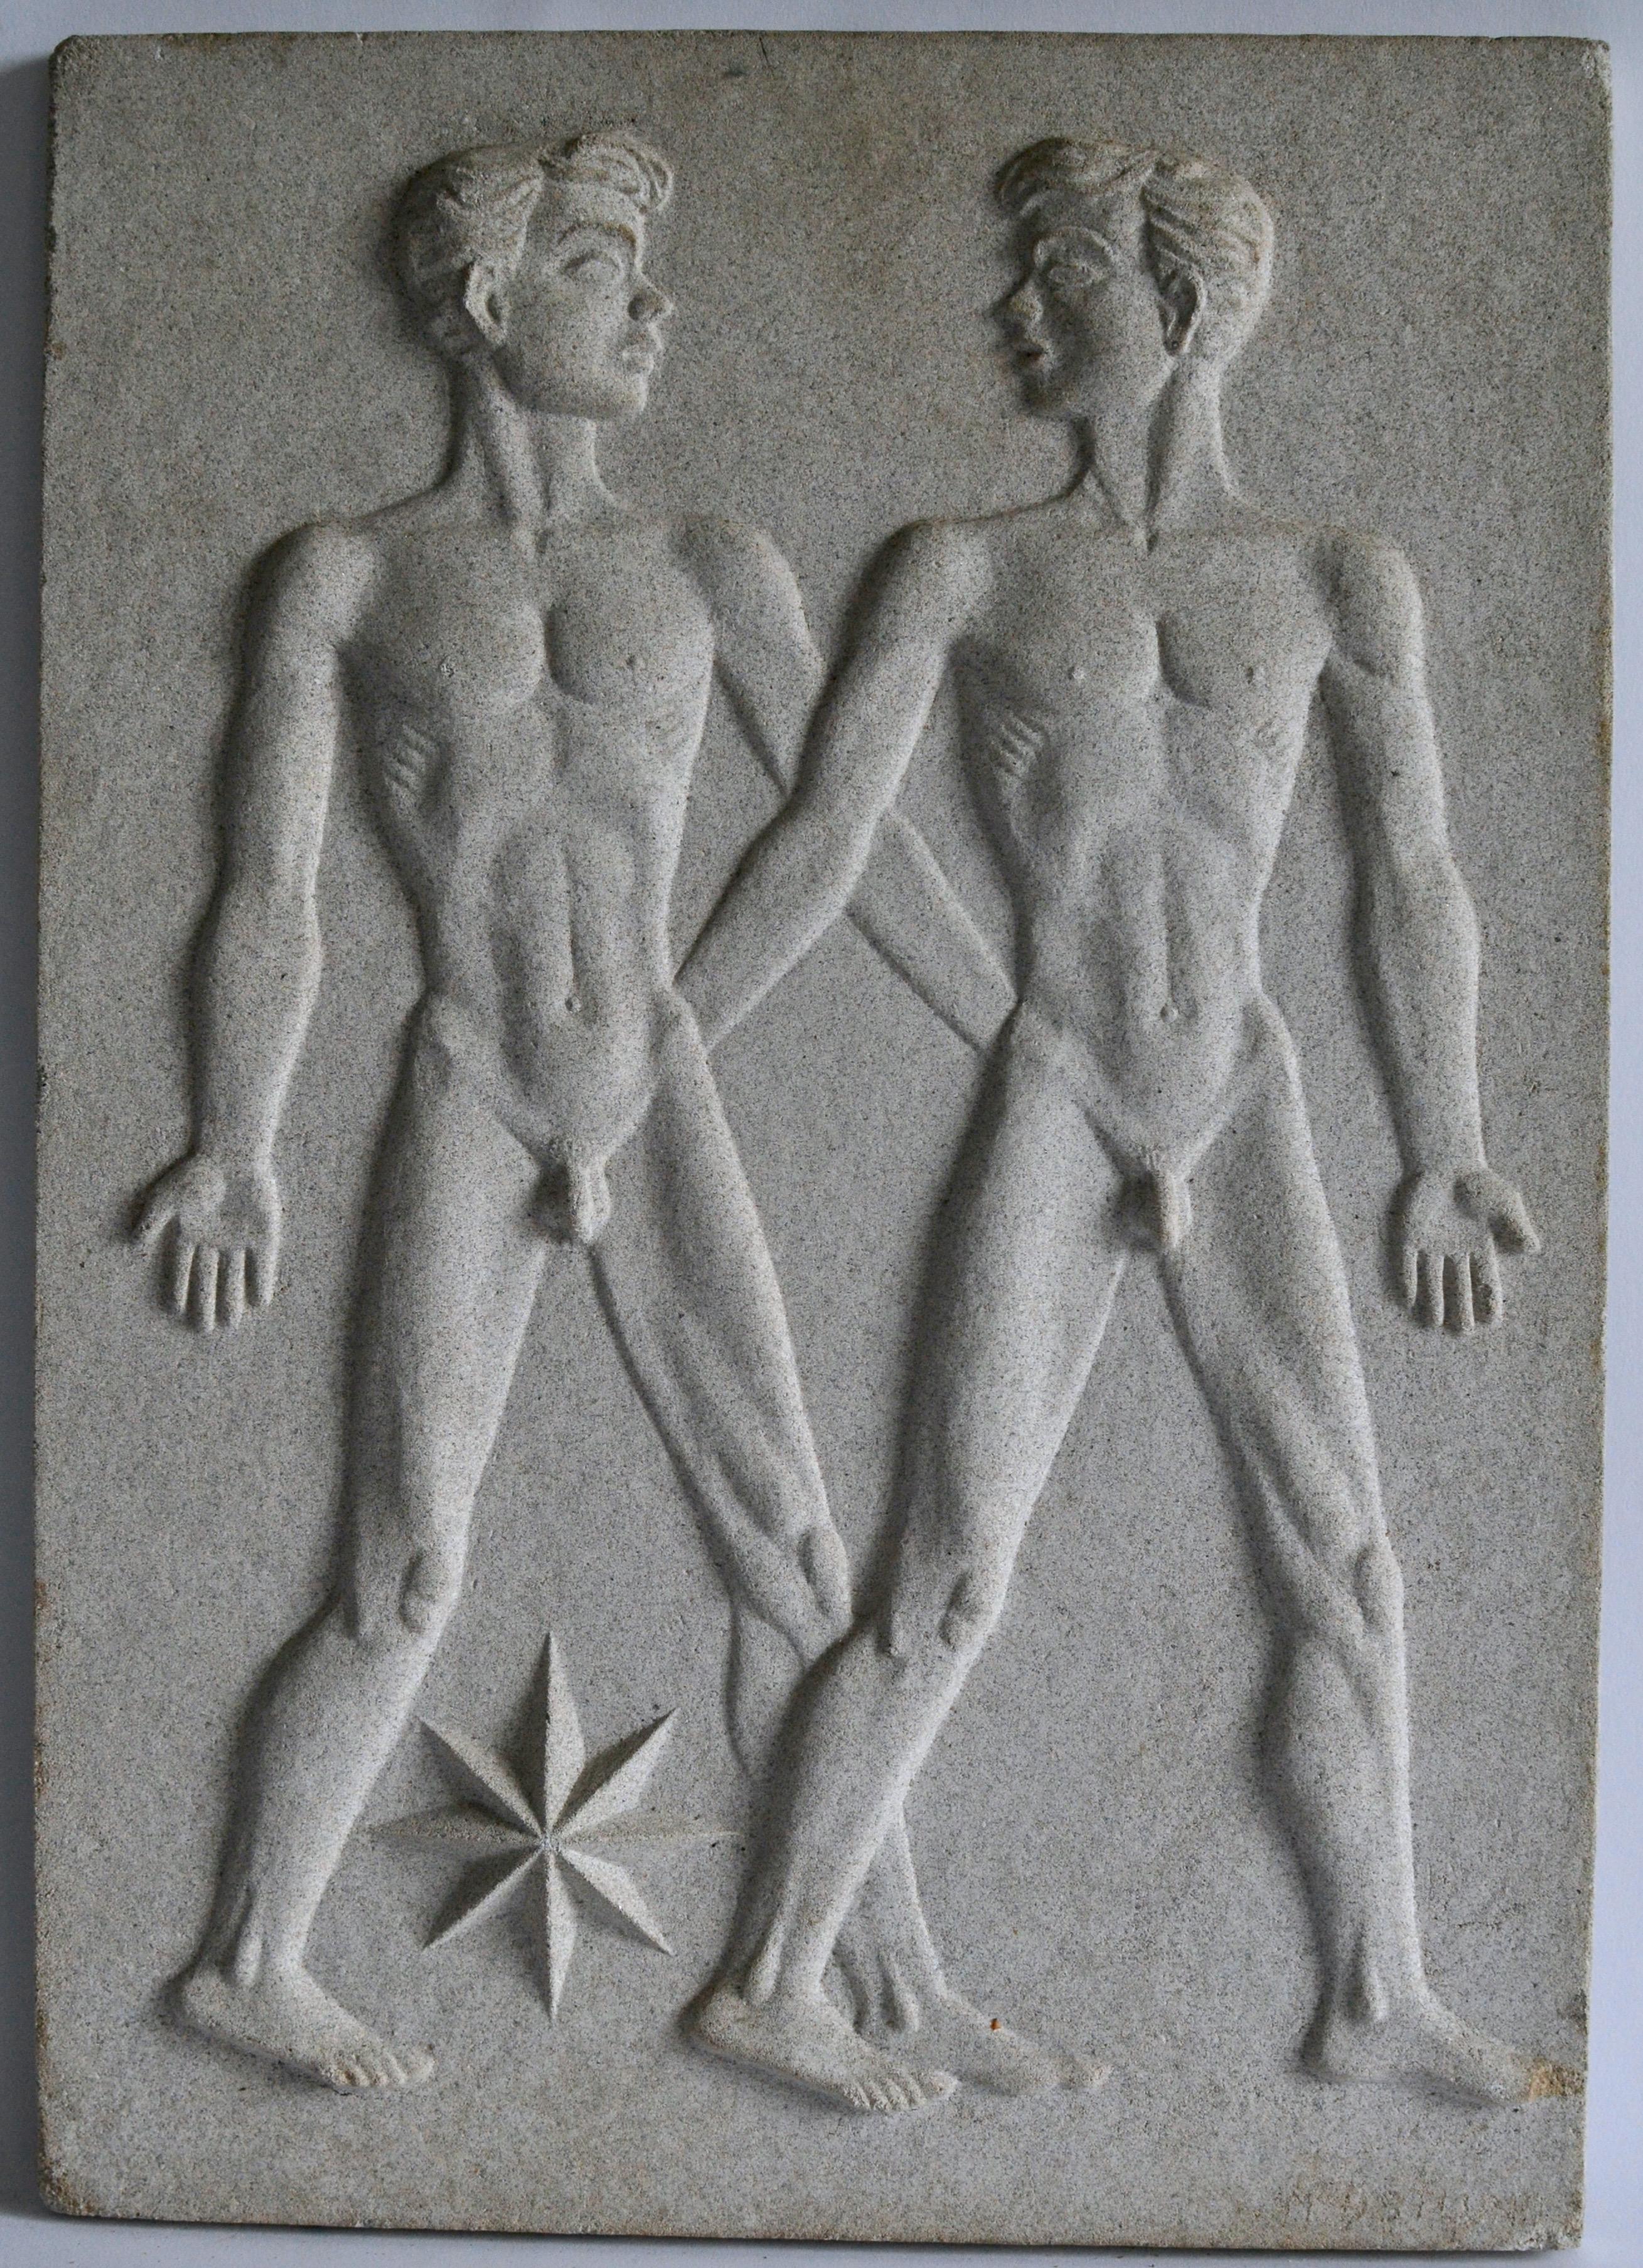 Cast Zodiac Artificial Stone Relief Sign of Scorpio, c. 1940